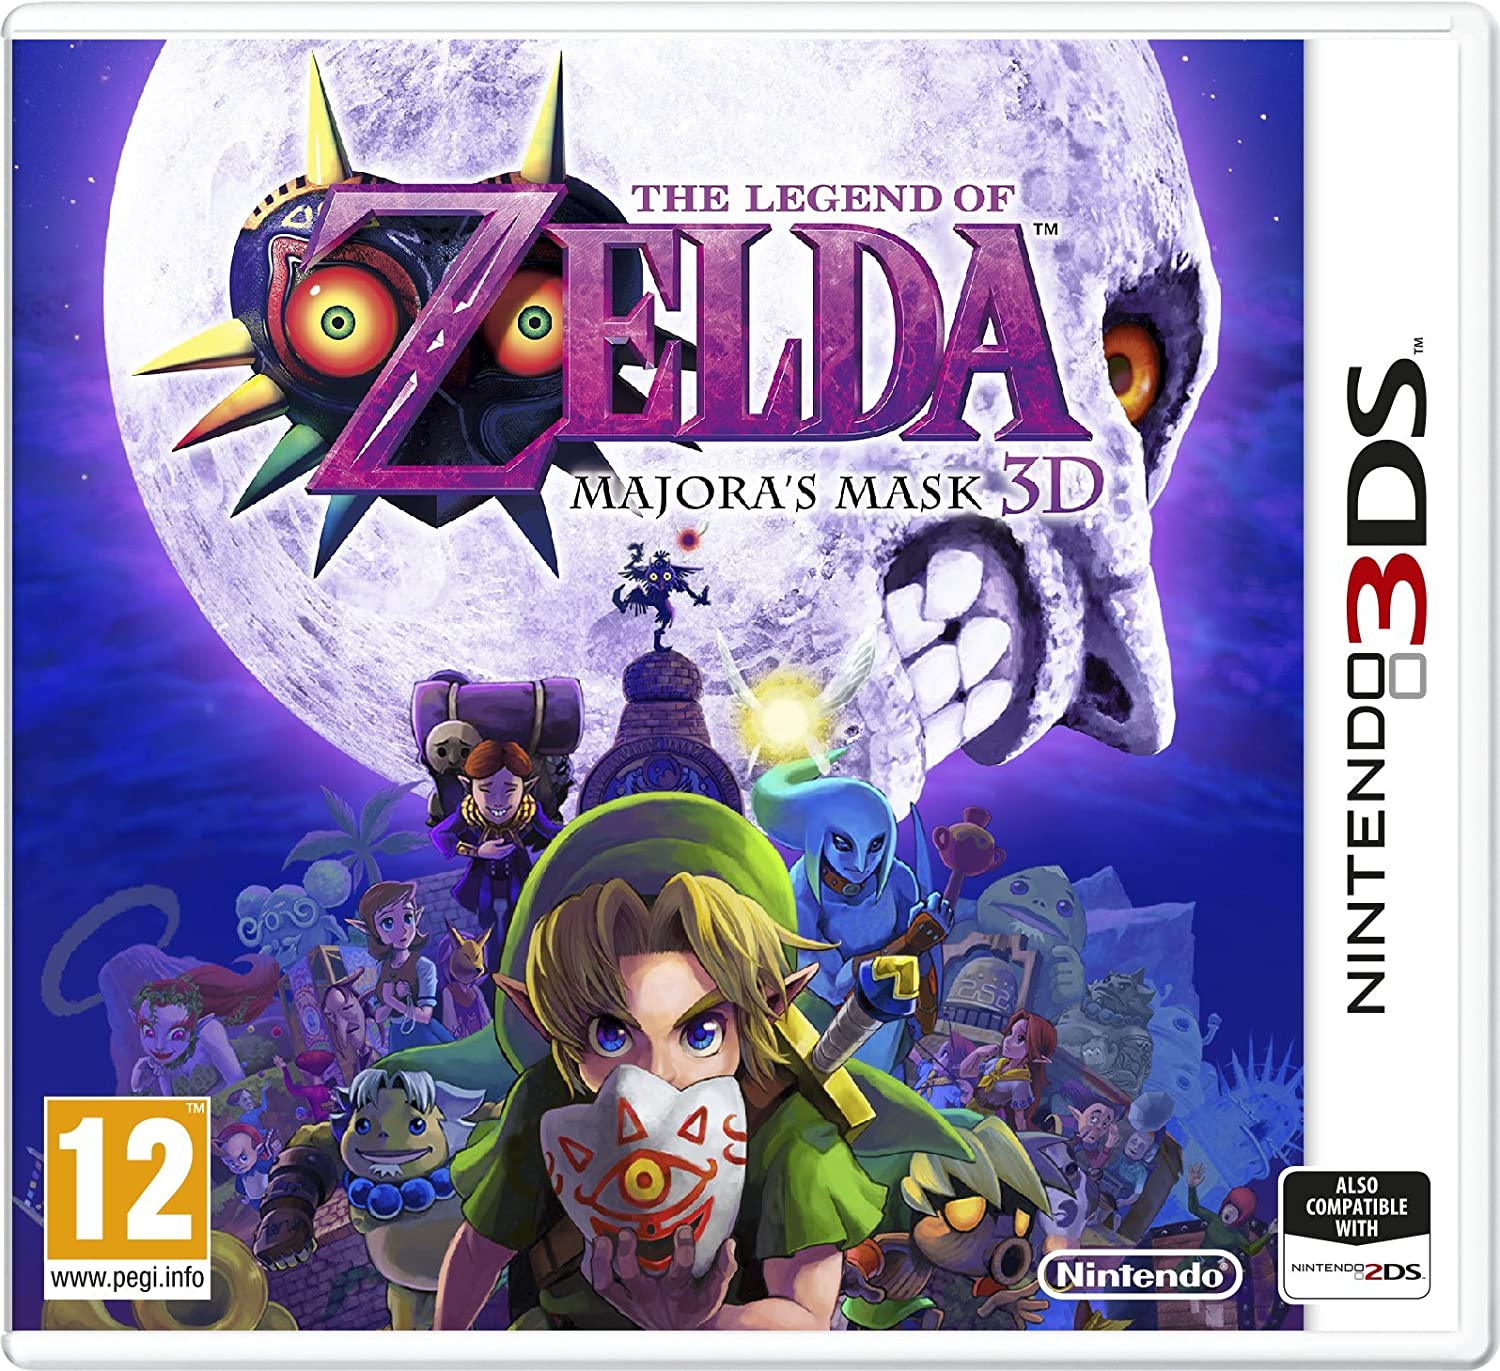 The-Legend-of-Zelda-Majora's-Mask-3D-3DS-bazaar-bazaar-com